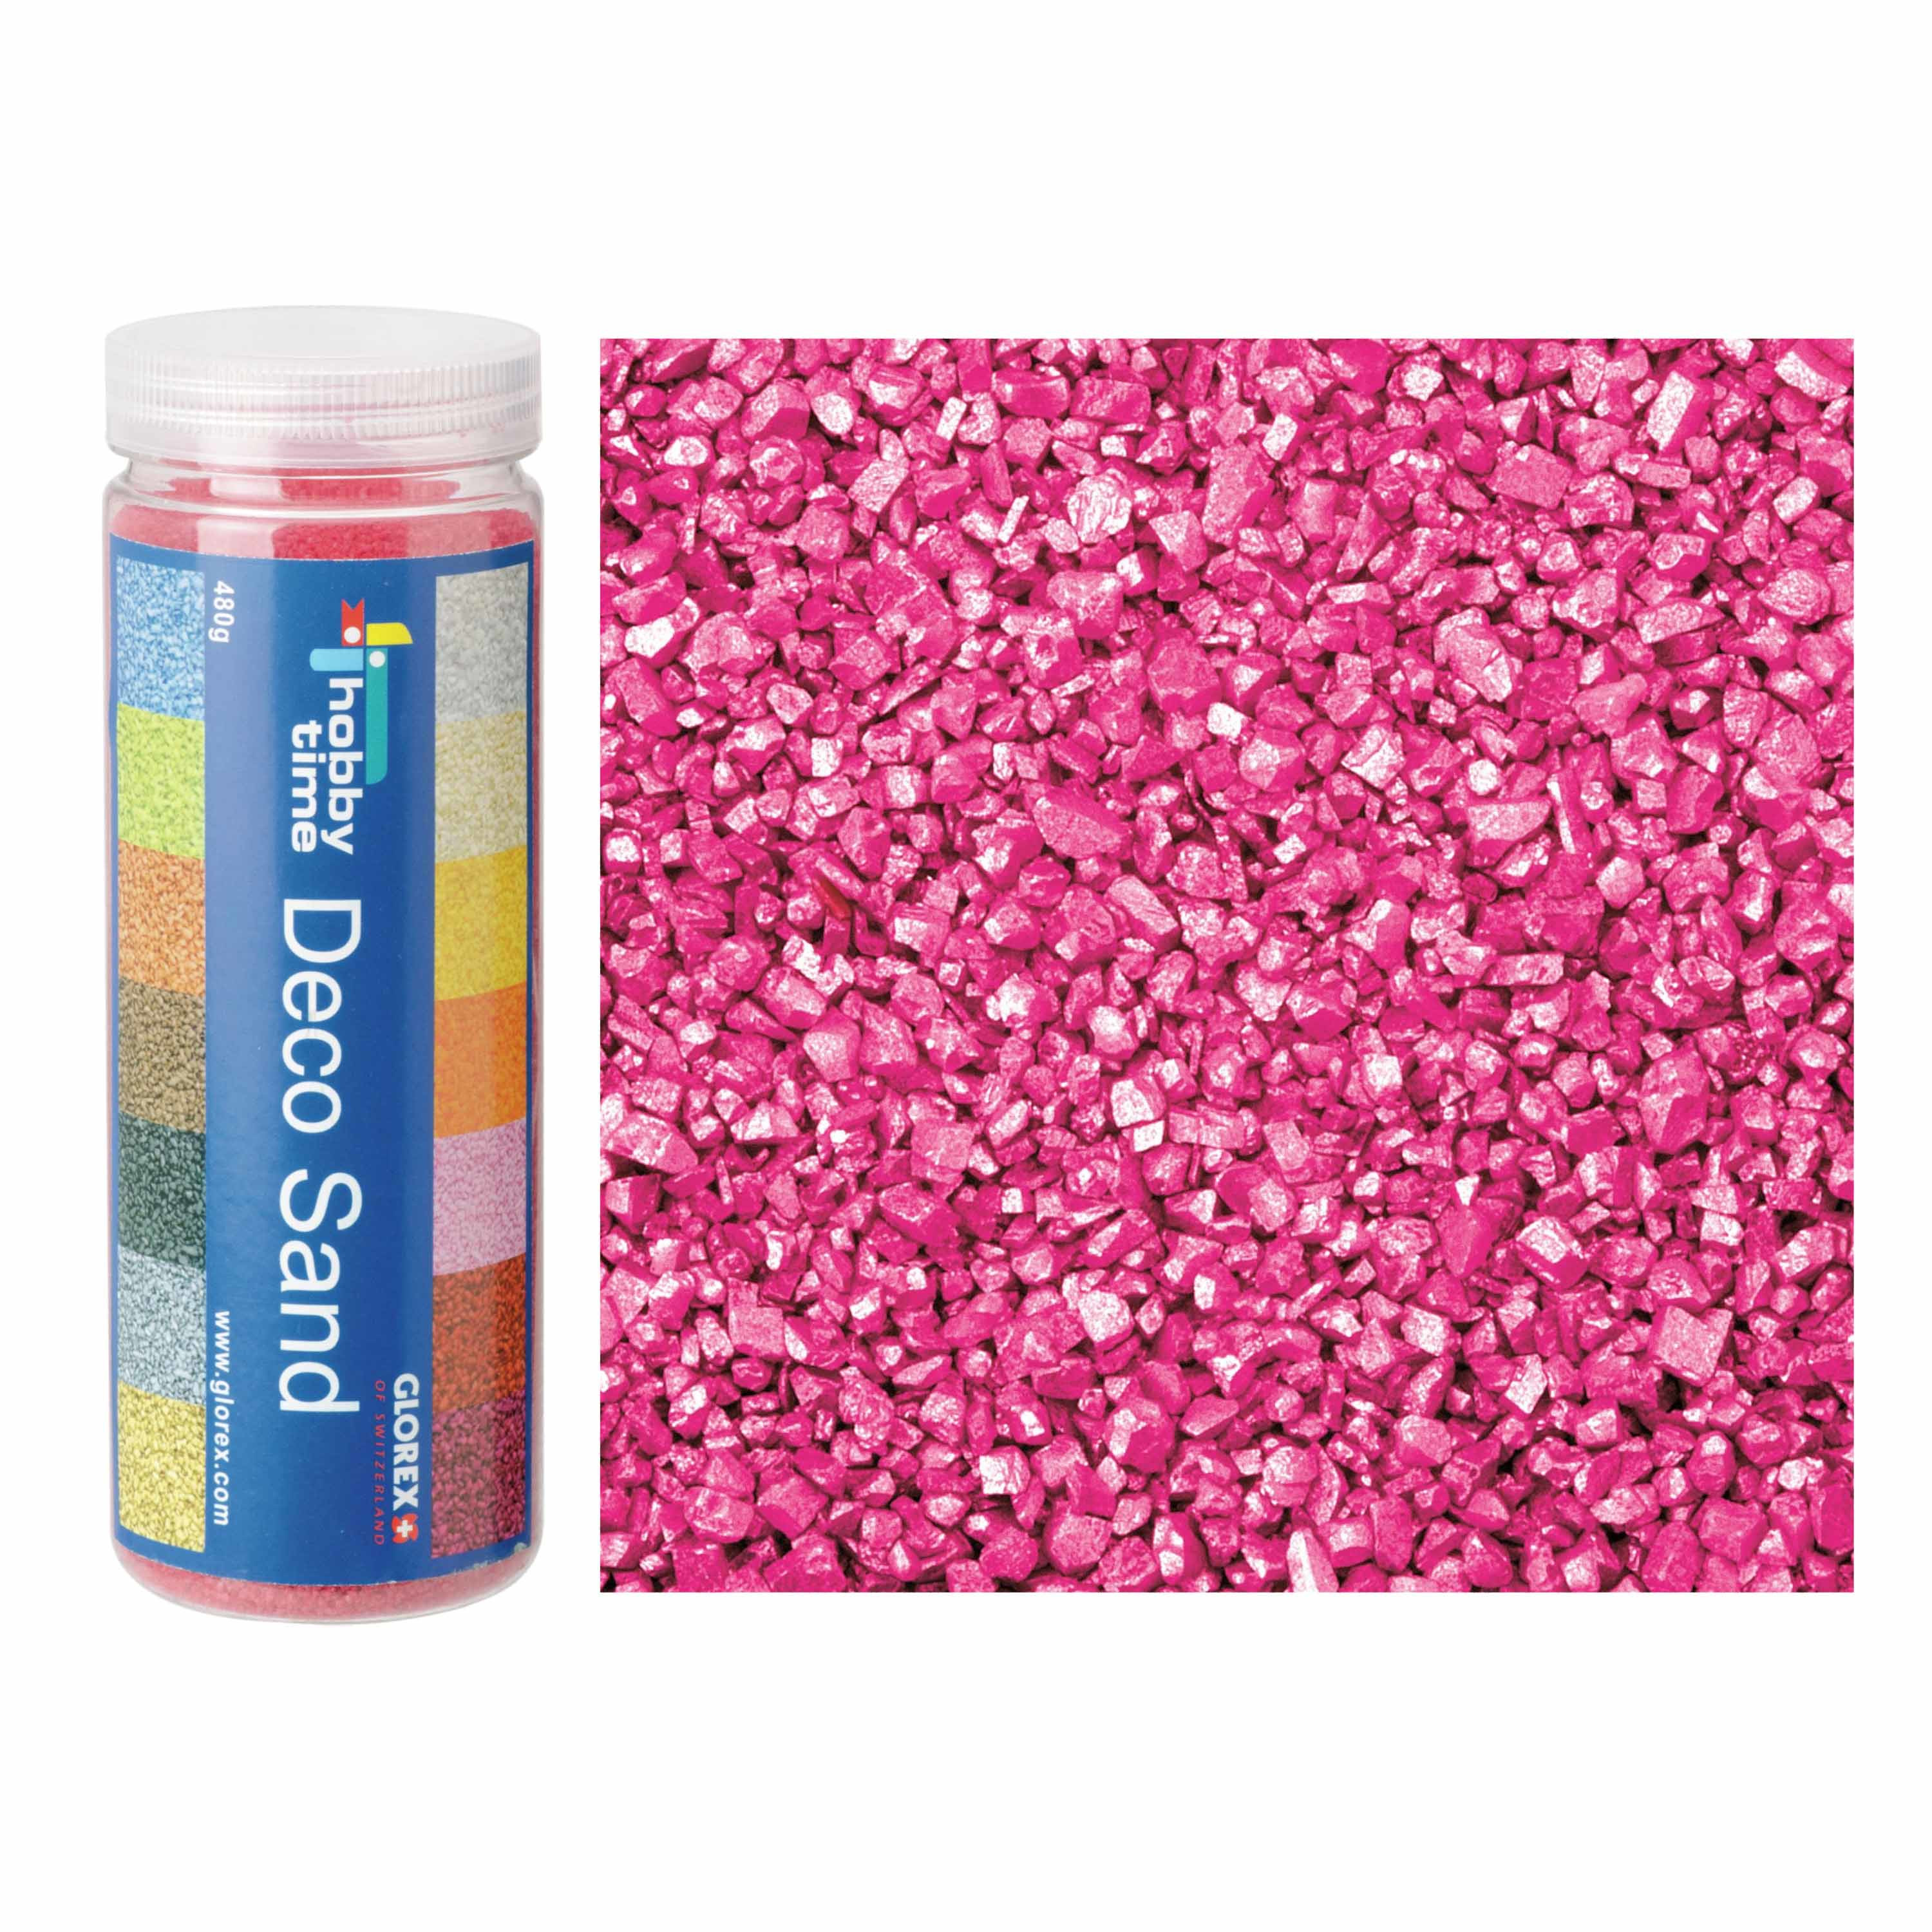 Fijn decoratie zand-kiezels roze 480 gram